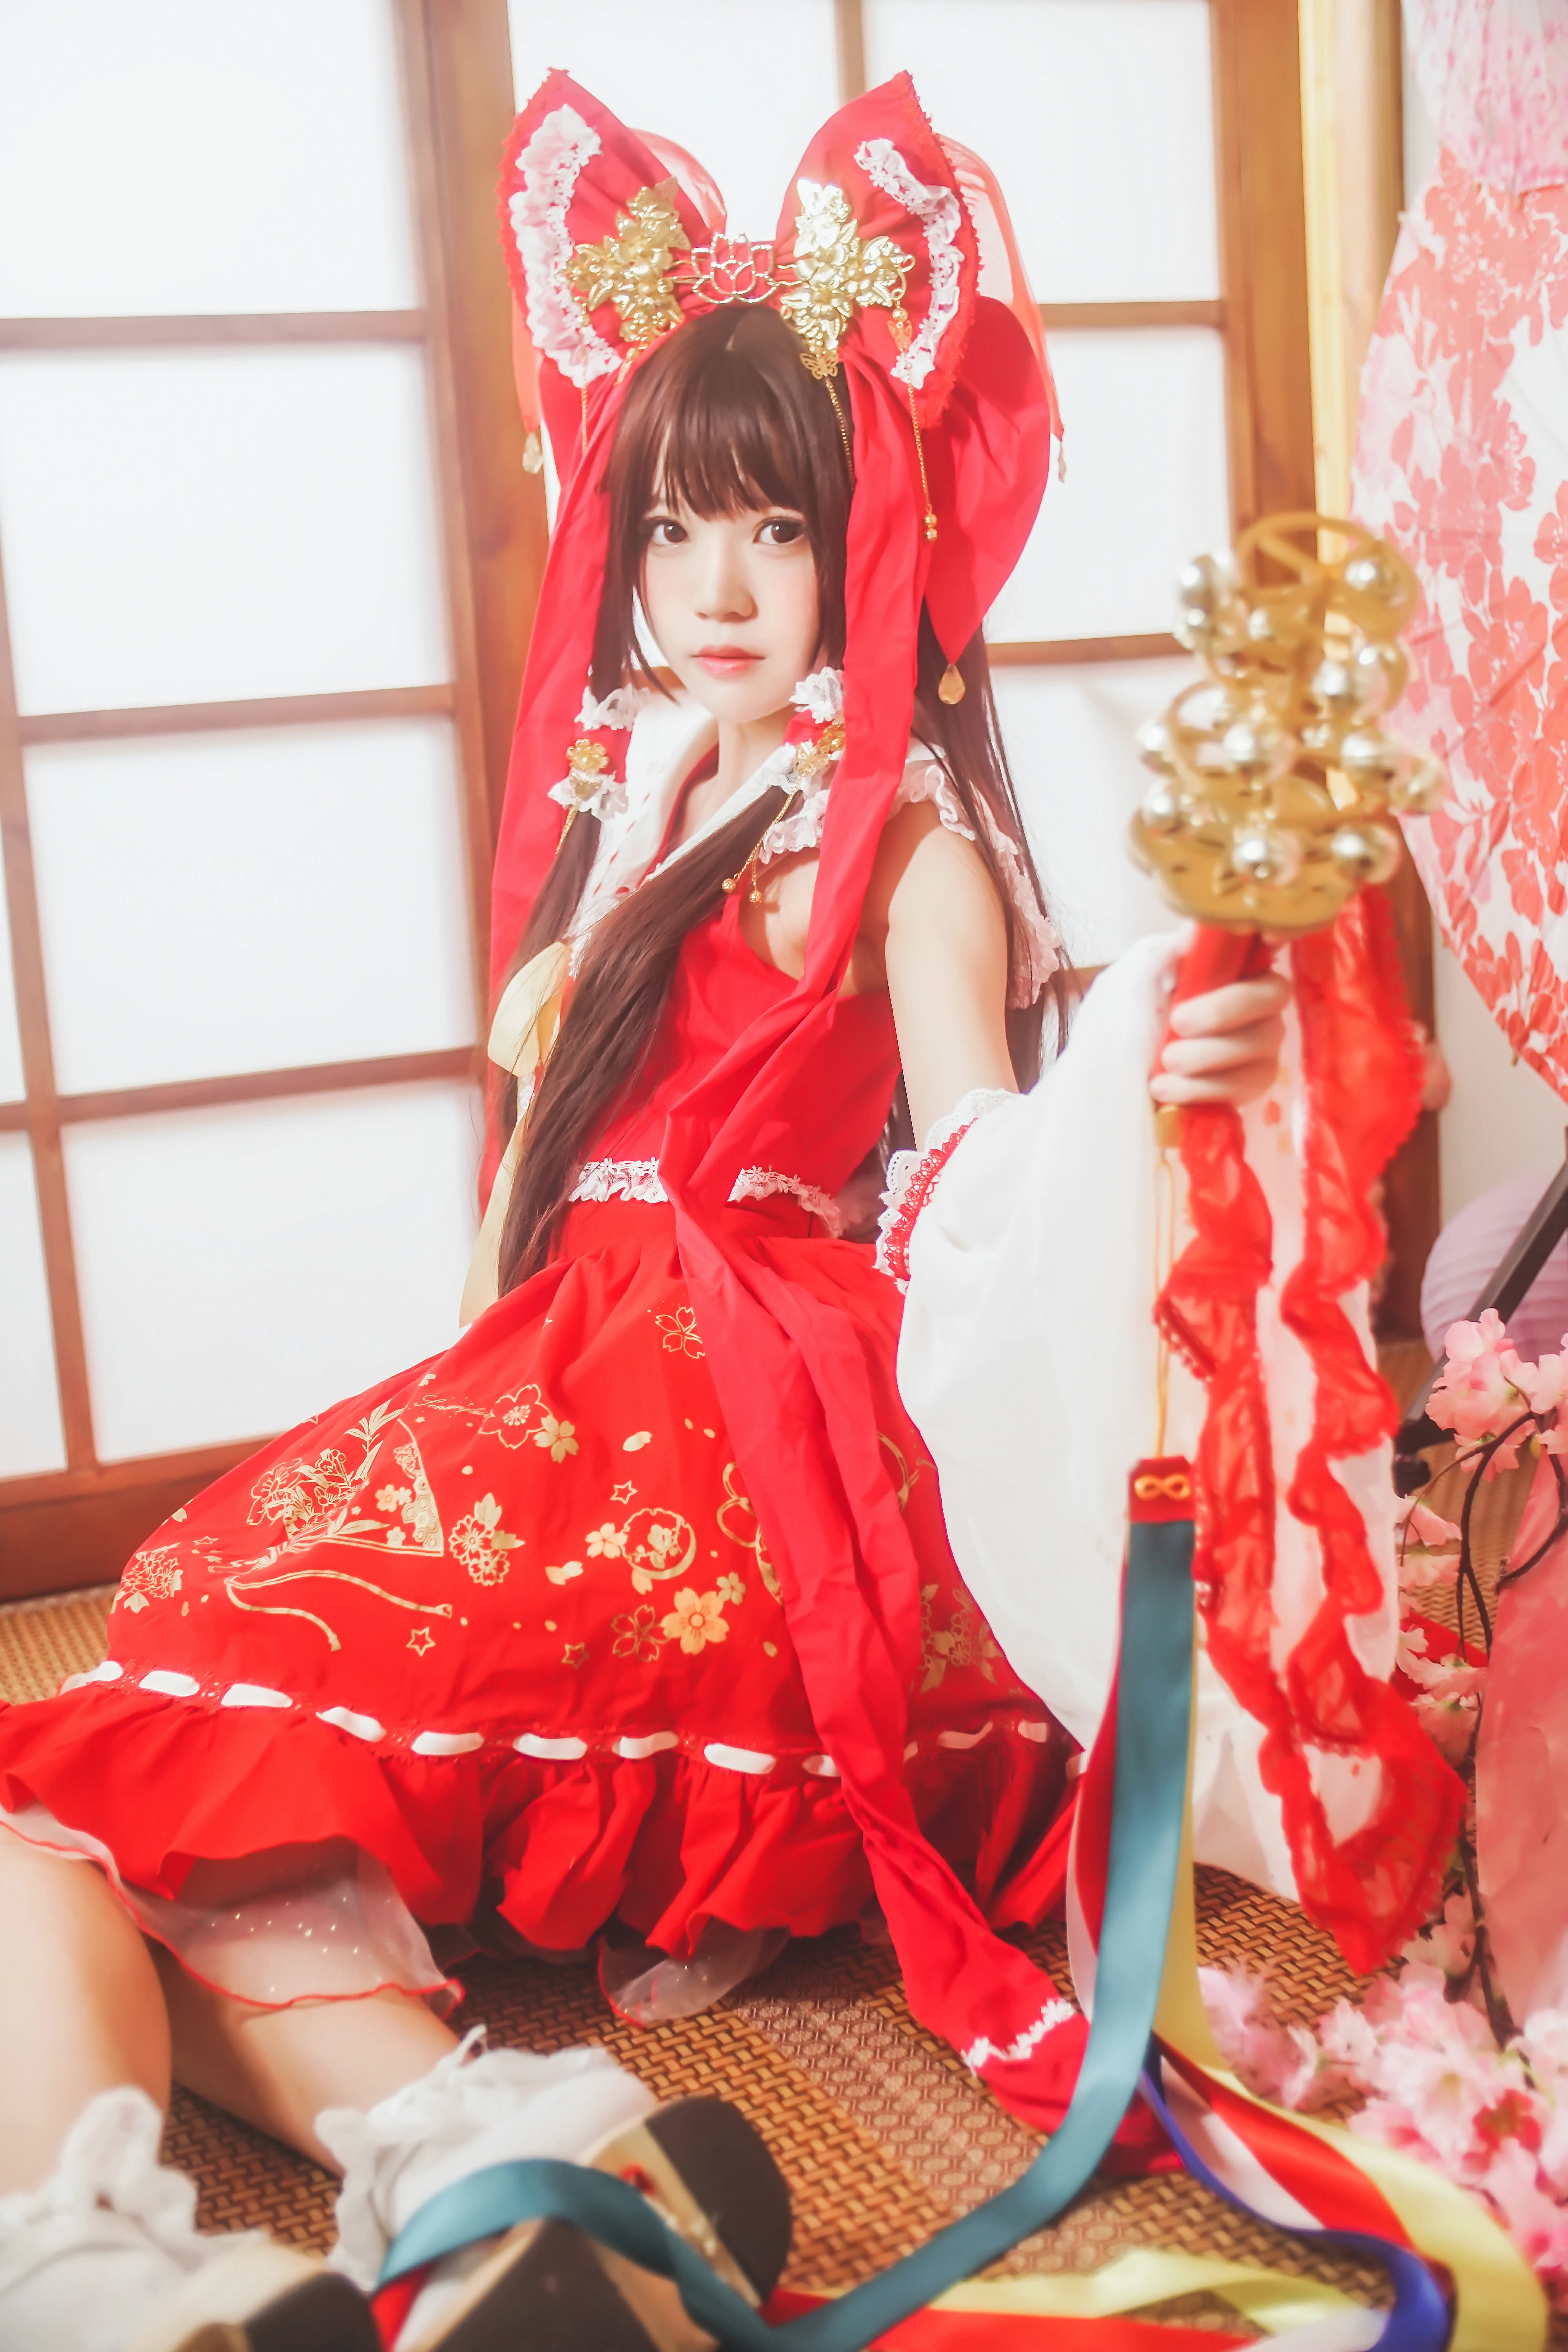 清纯少女小萝莉 桜桃喵 红色连身制服裙 和风写真,0018